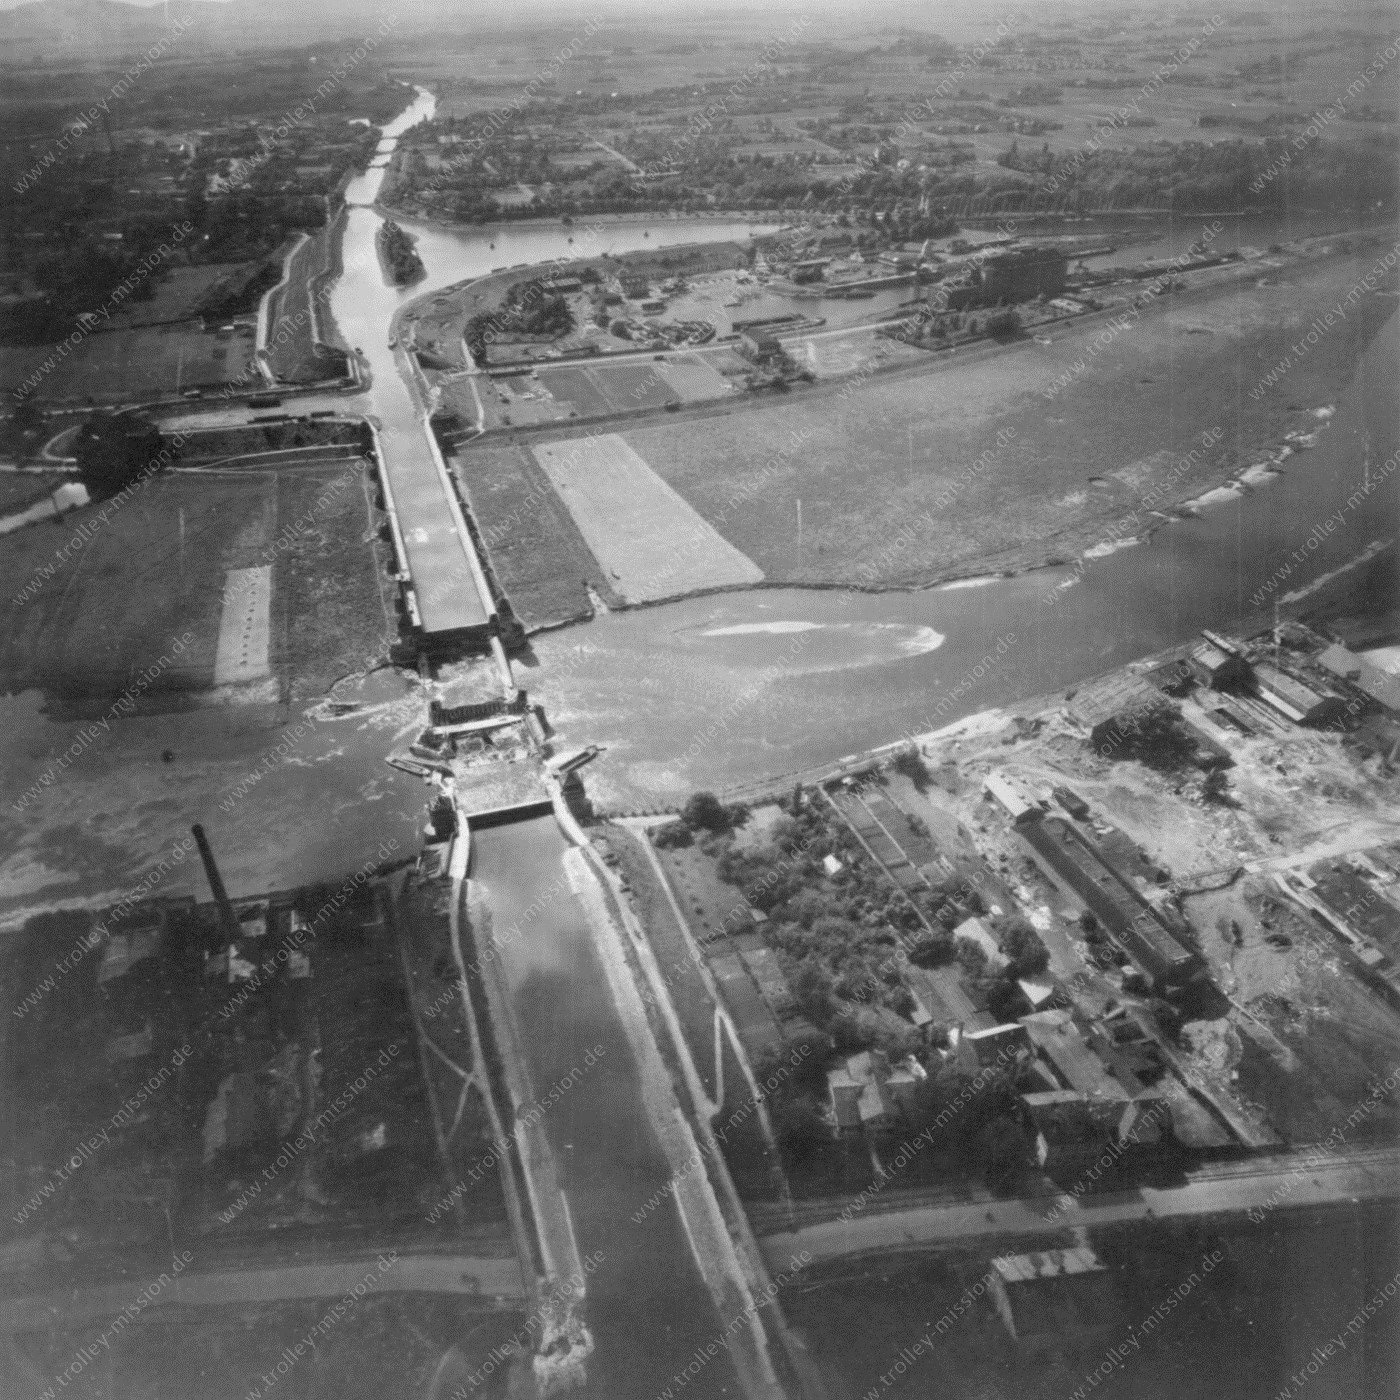 Wasserstraßenkreuz Minden 1945 - Luftbild des zerstörten Mittellandkanal